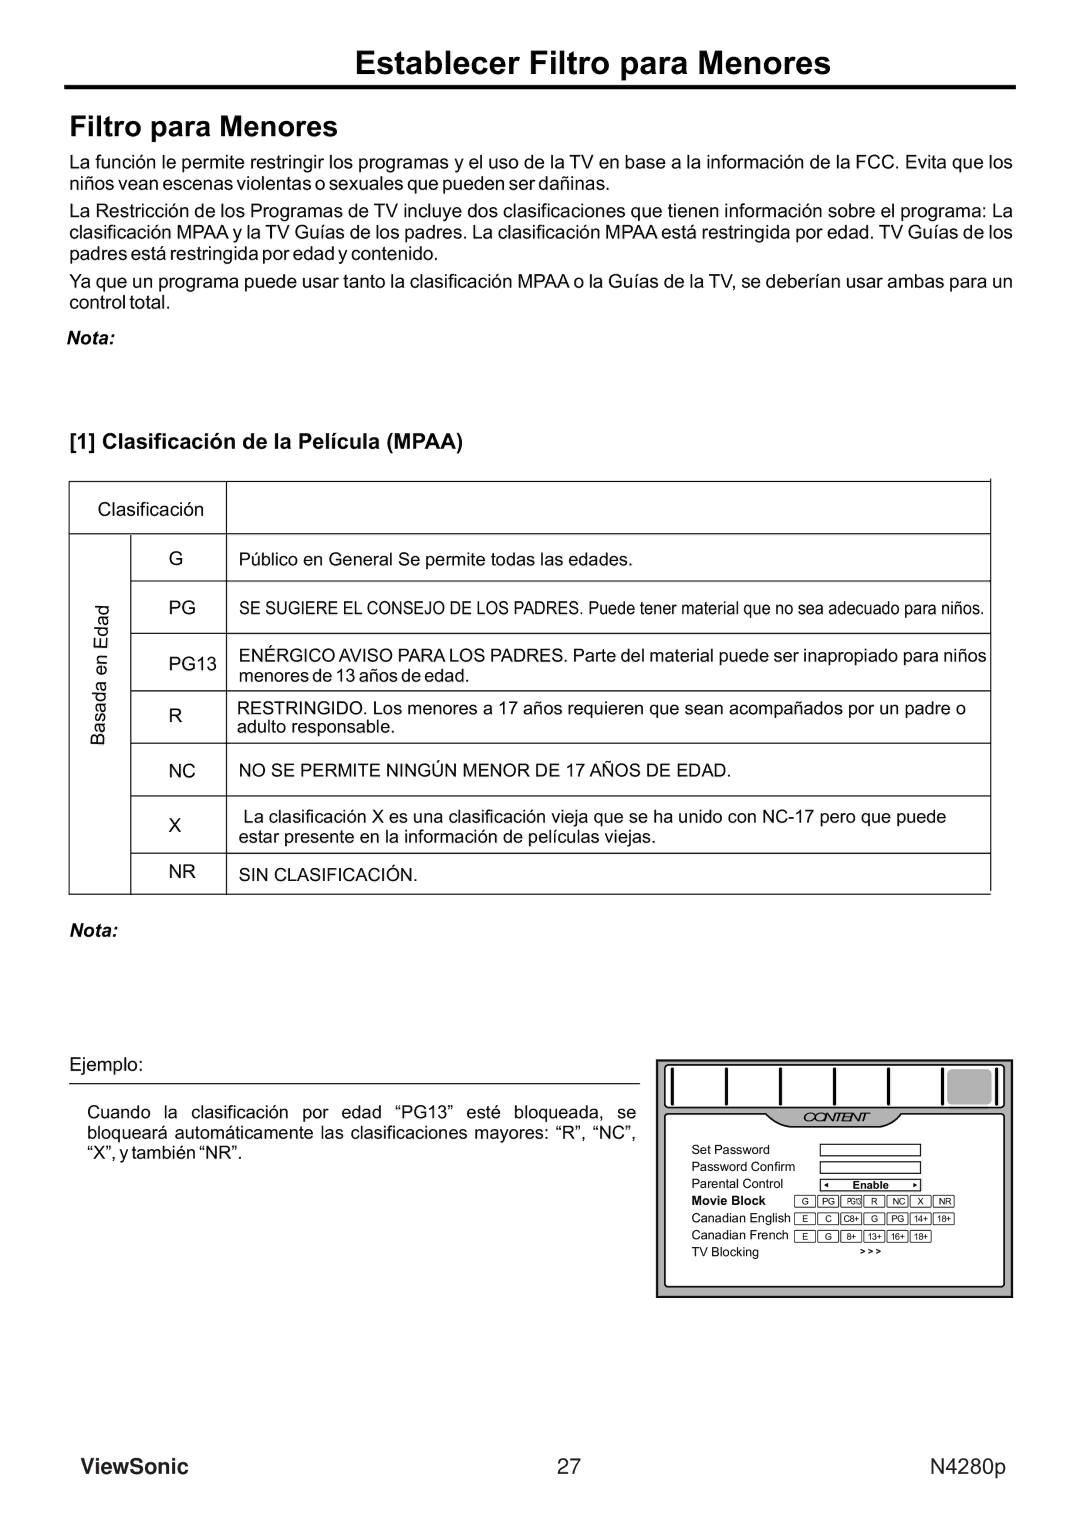 ViewSonic VS11838-1M manual Establecer Filtro para Menores, Clasificación de la Película Mpaa 